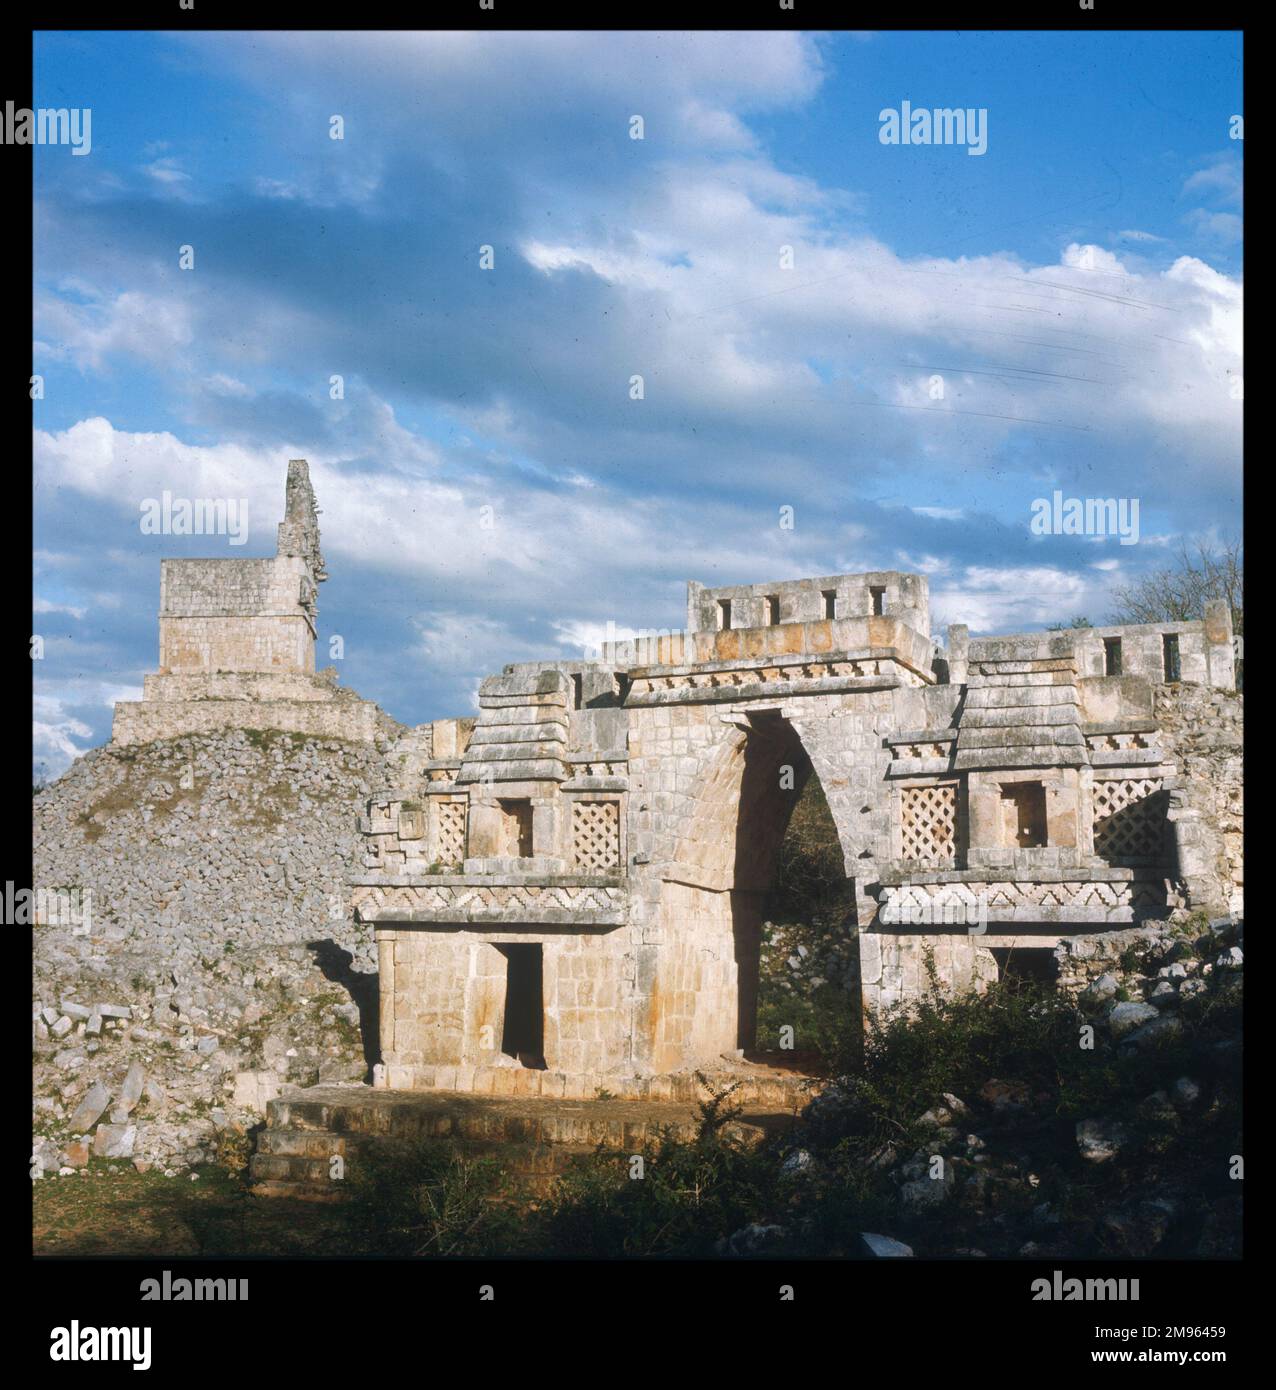 L'ARCHE de l'ancienne ville de Labna, Yucatan avec le MIRADOR debout sur les ruines d'une pyramide en arrière-plan. La ville a été construite au 9th/10th siècle. Banque D'Images